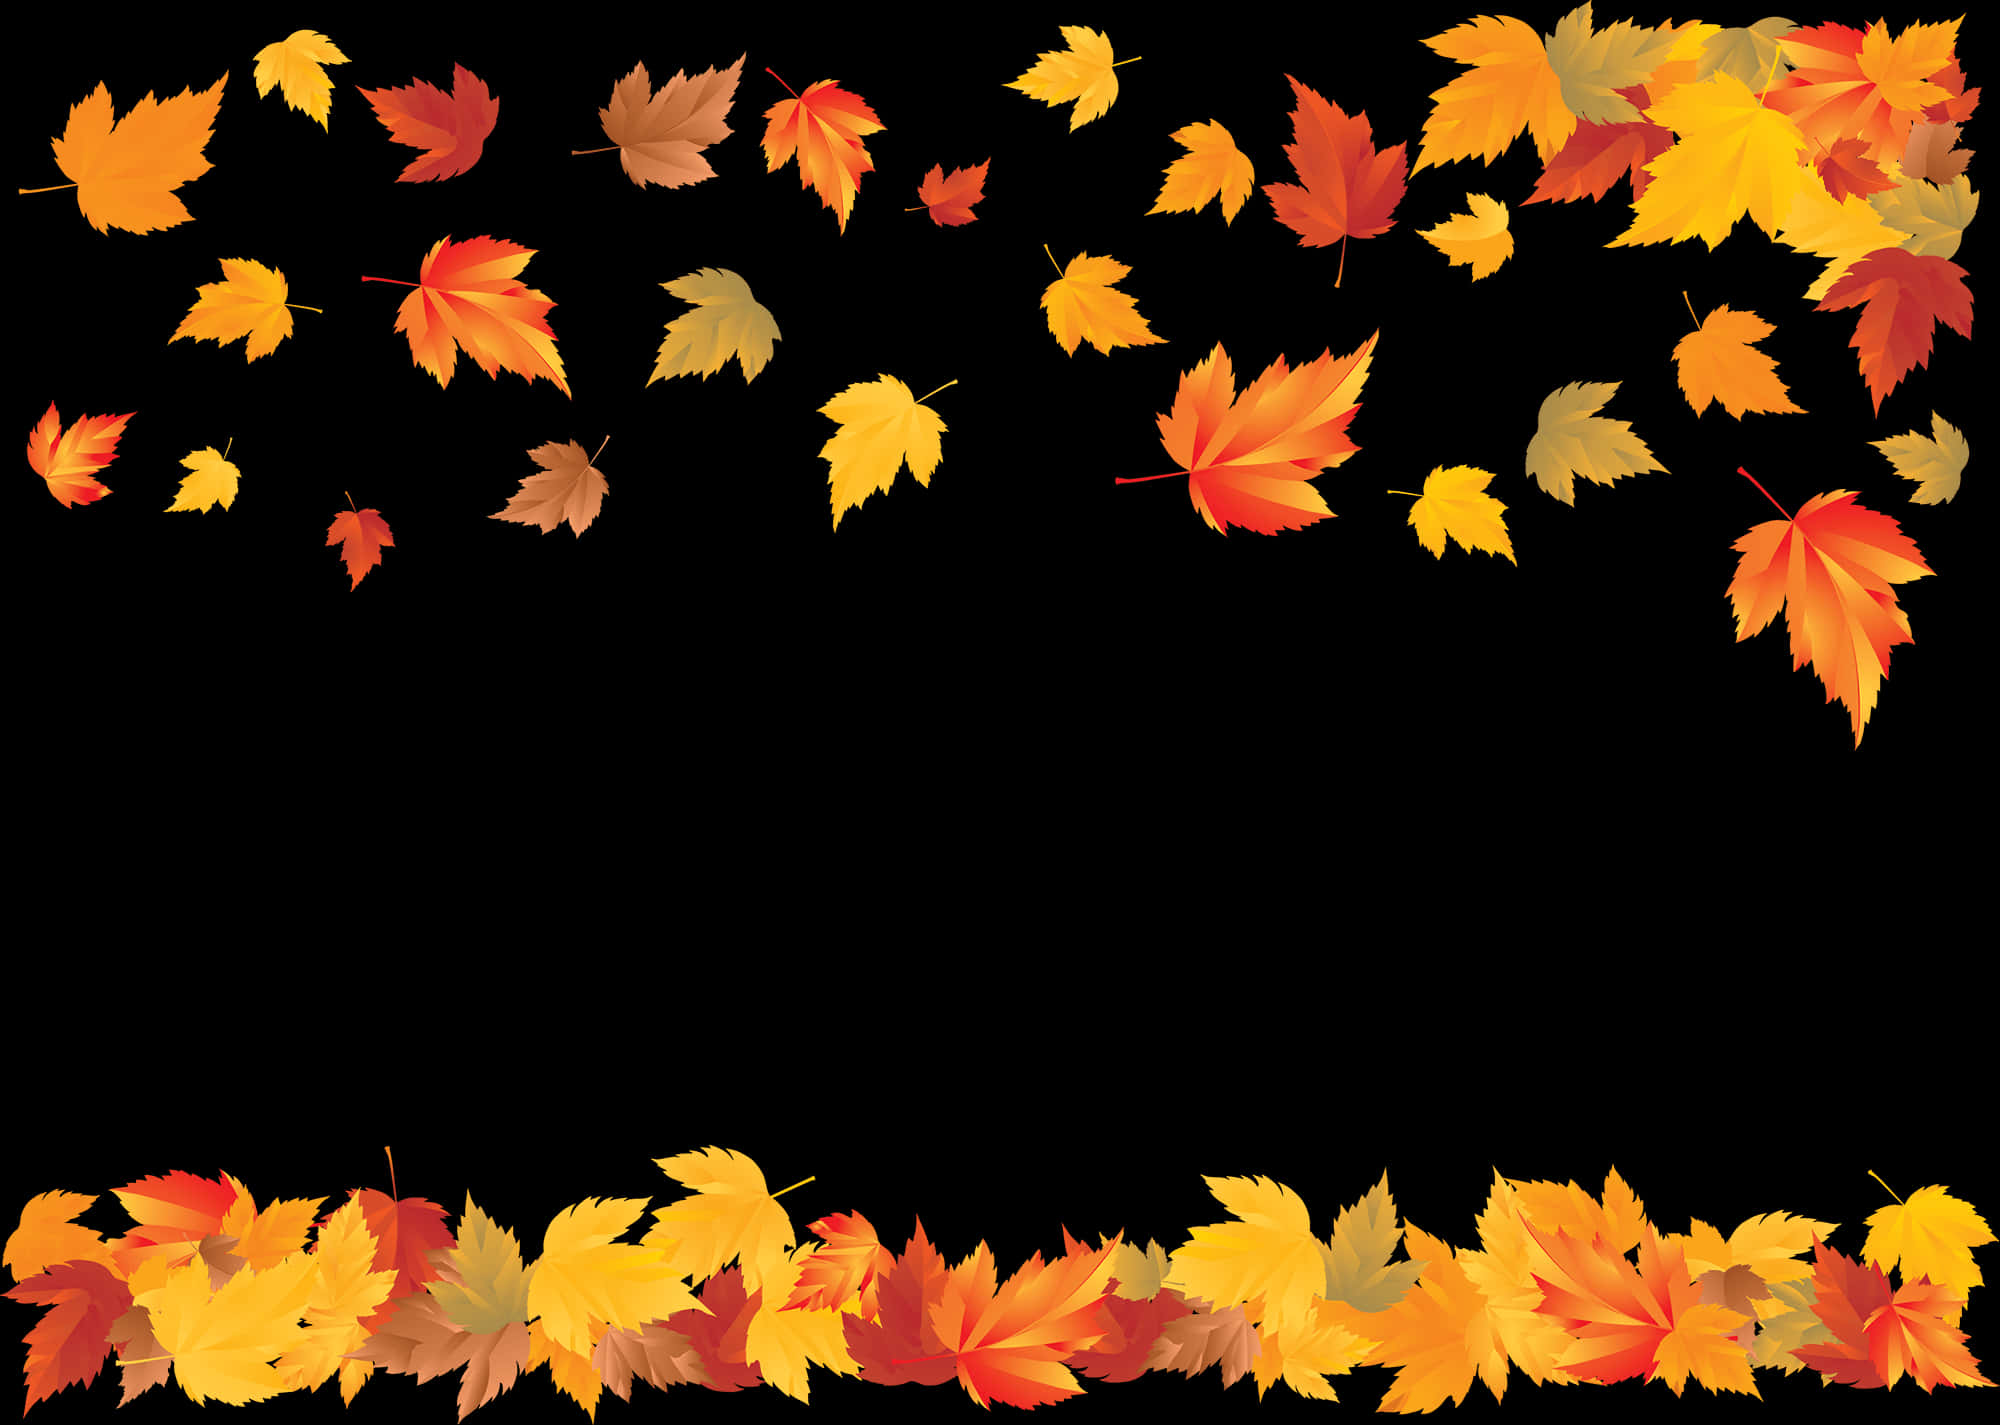 Autumn Leaves Frame Black Background.jpg PNG image